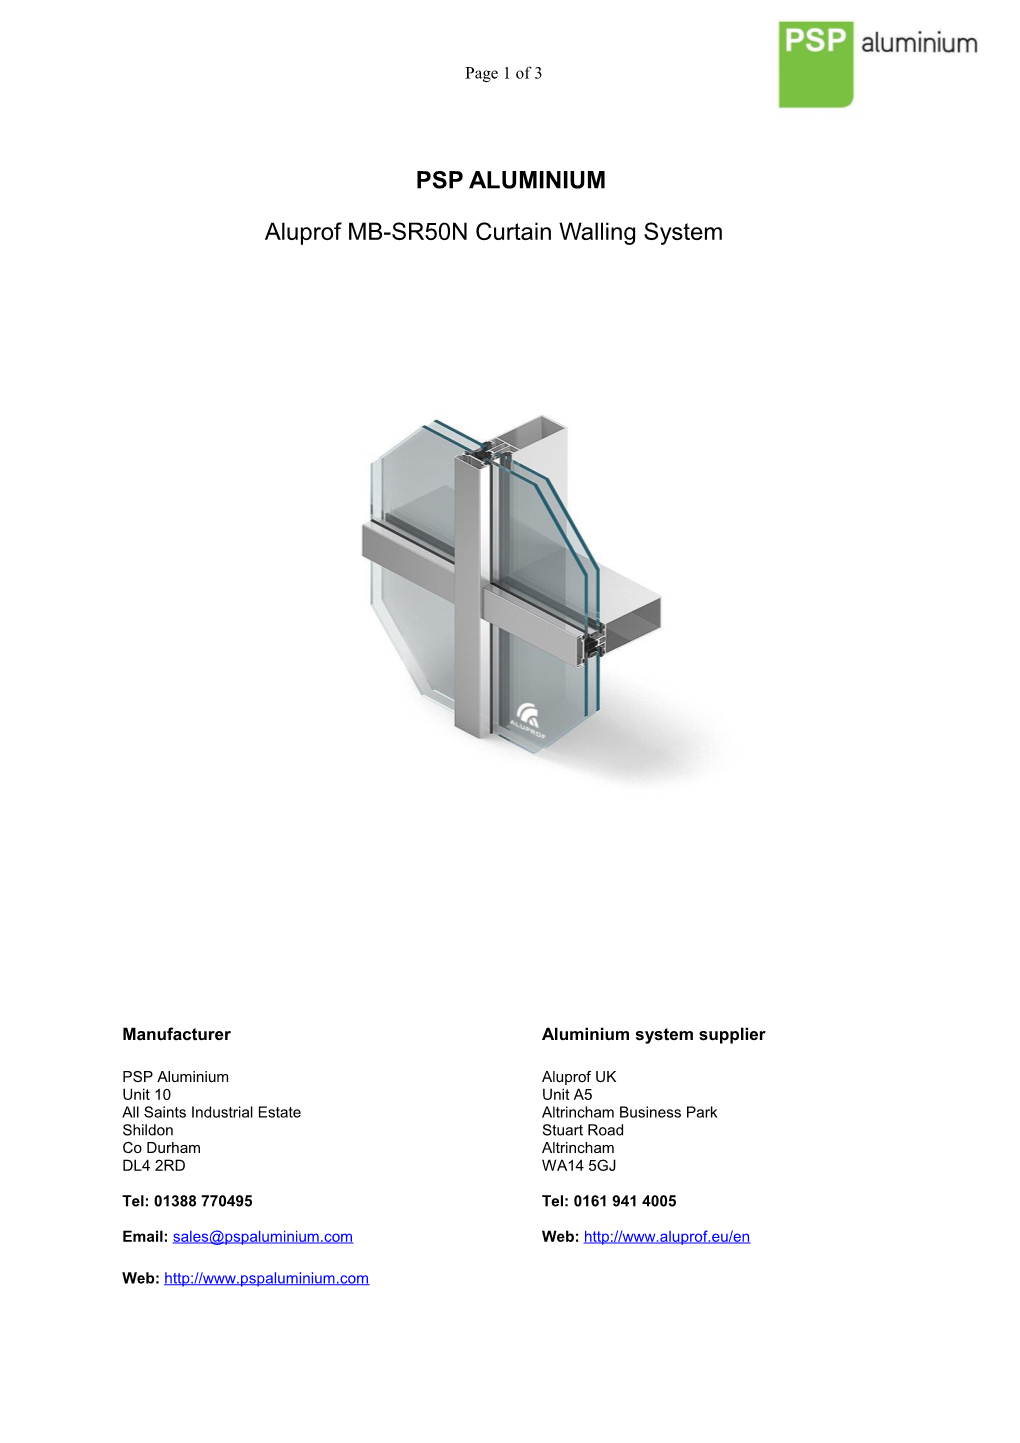 Aluprof MB-SR50N Curtain Walling System